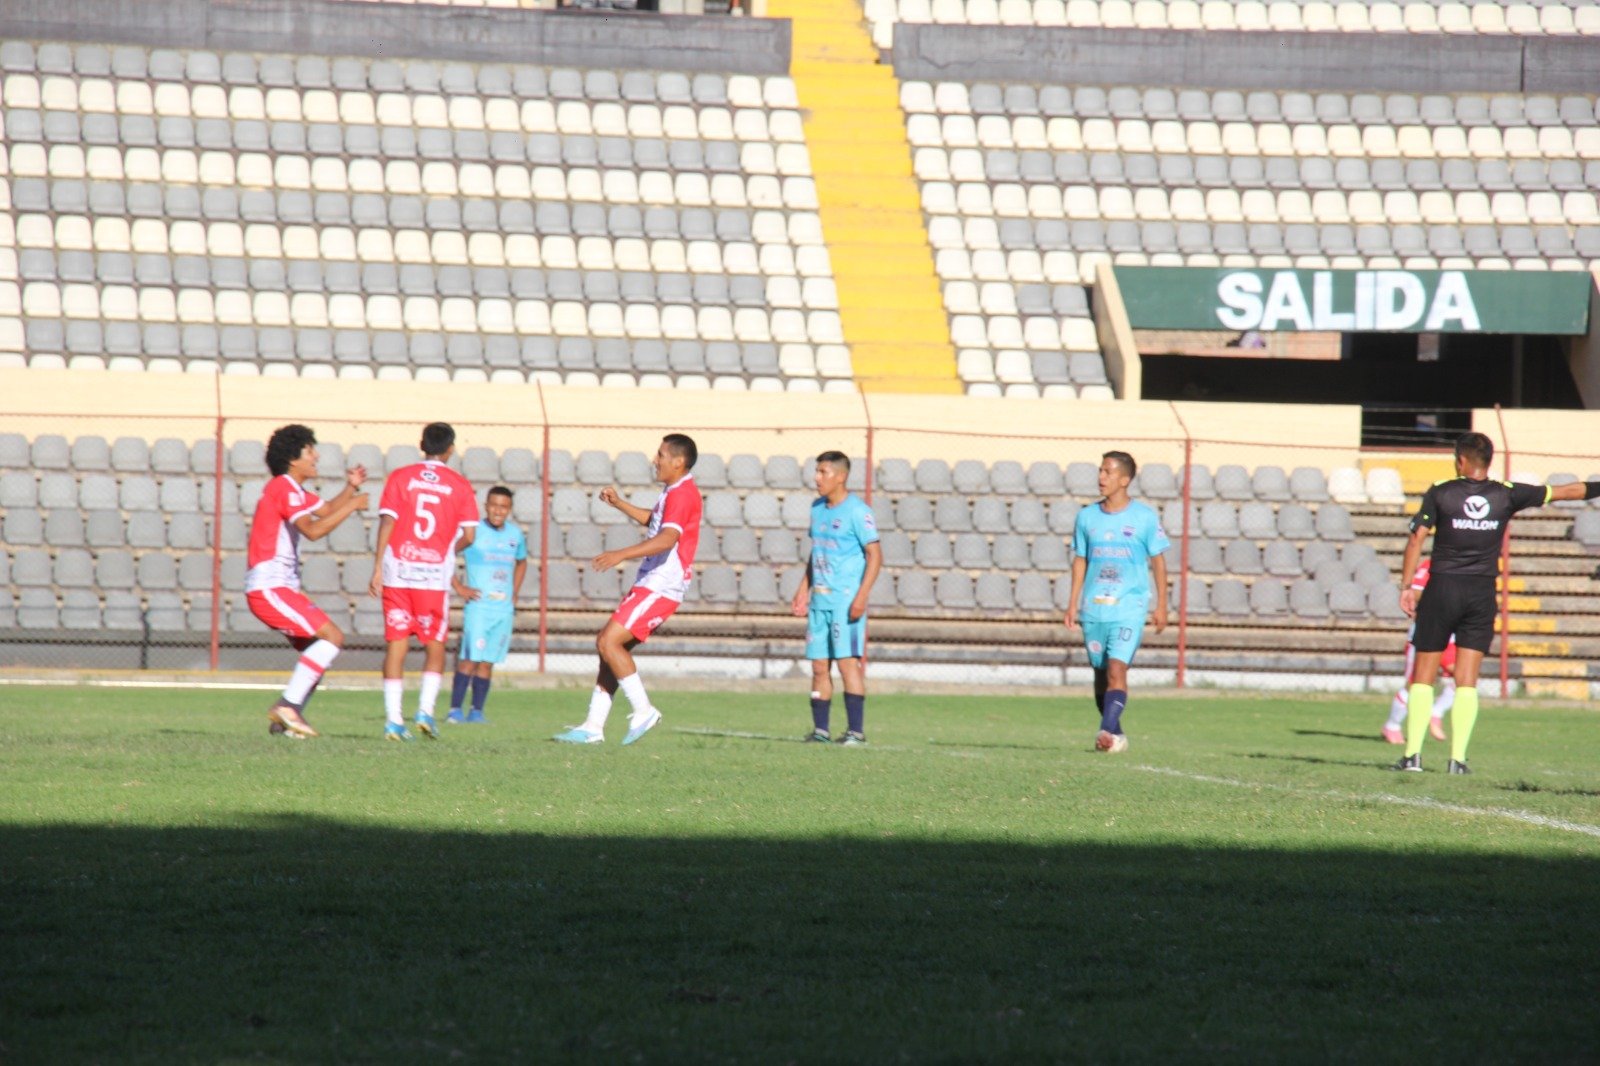 Copa Perú: los cuartos de final arrancan el domingo en Huánuco